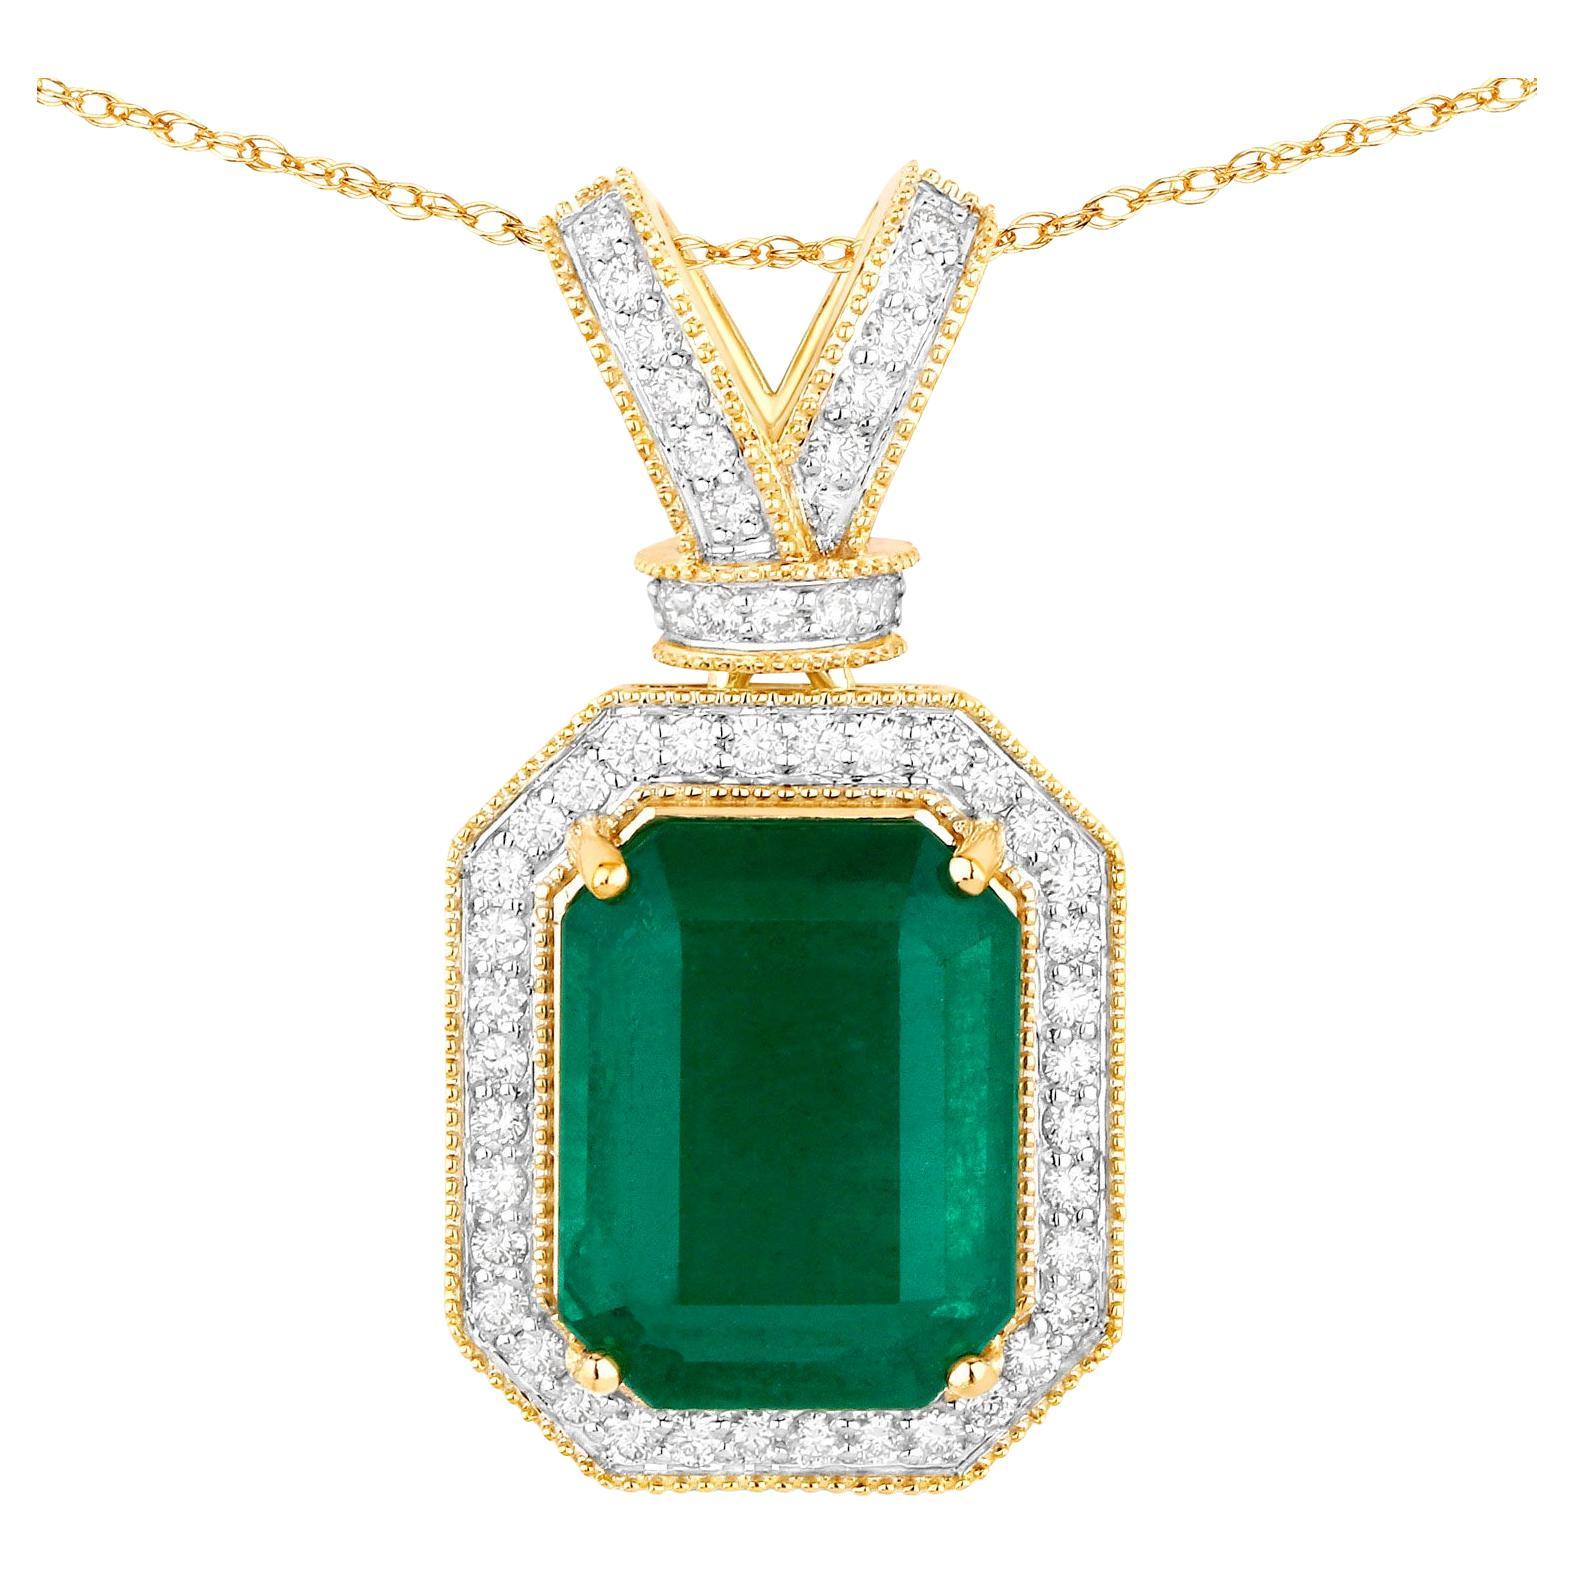 IGI Certified Zambian Emerald Pendant Necklace 7.91 Carats 14K Yellow Gold